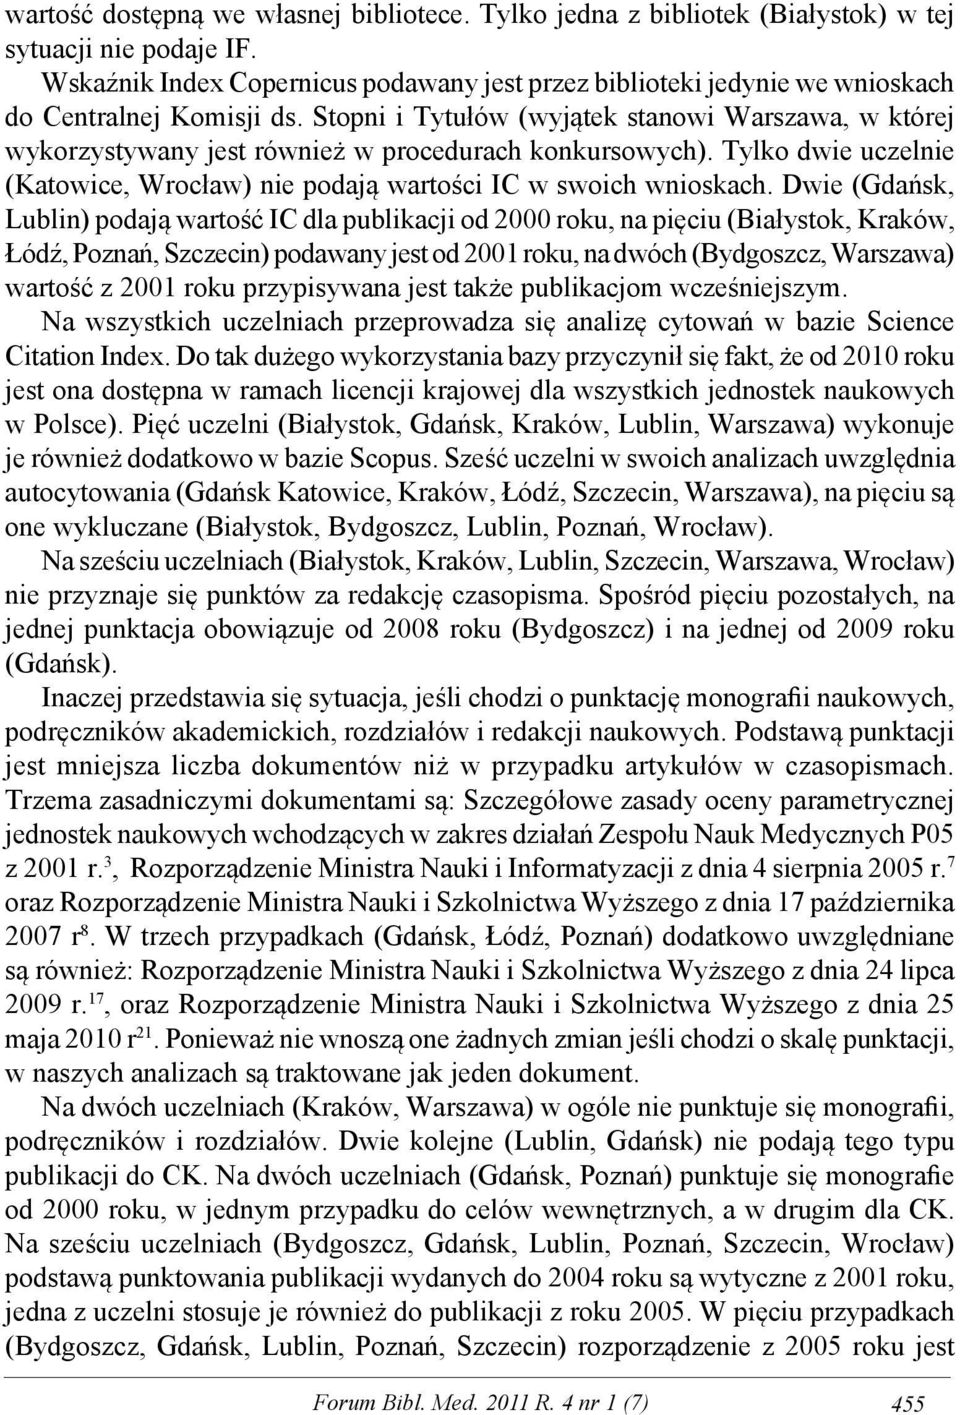 Stopni i Tytułów (wyjątek stanowi Warszawa, w której wykorzystywany jest również w procedurach konkursowych). Tylko dwie uczelnie (Katowice, Wrocław) nie podają wartości IC w swoich wnioskach.